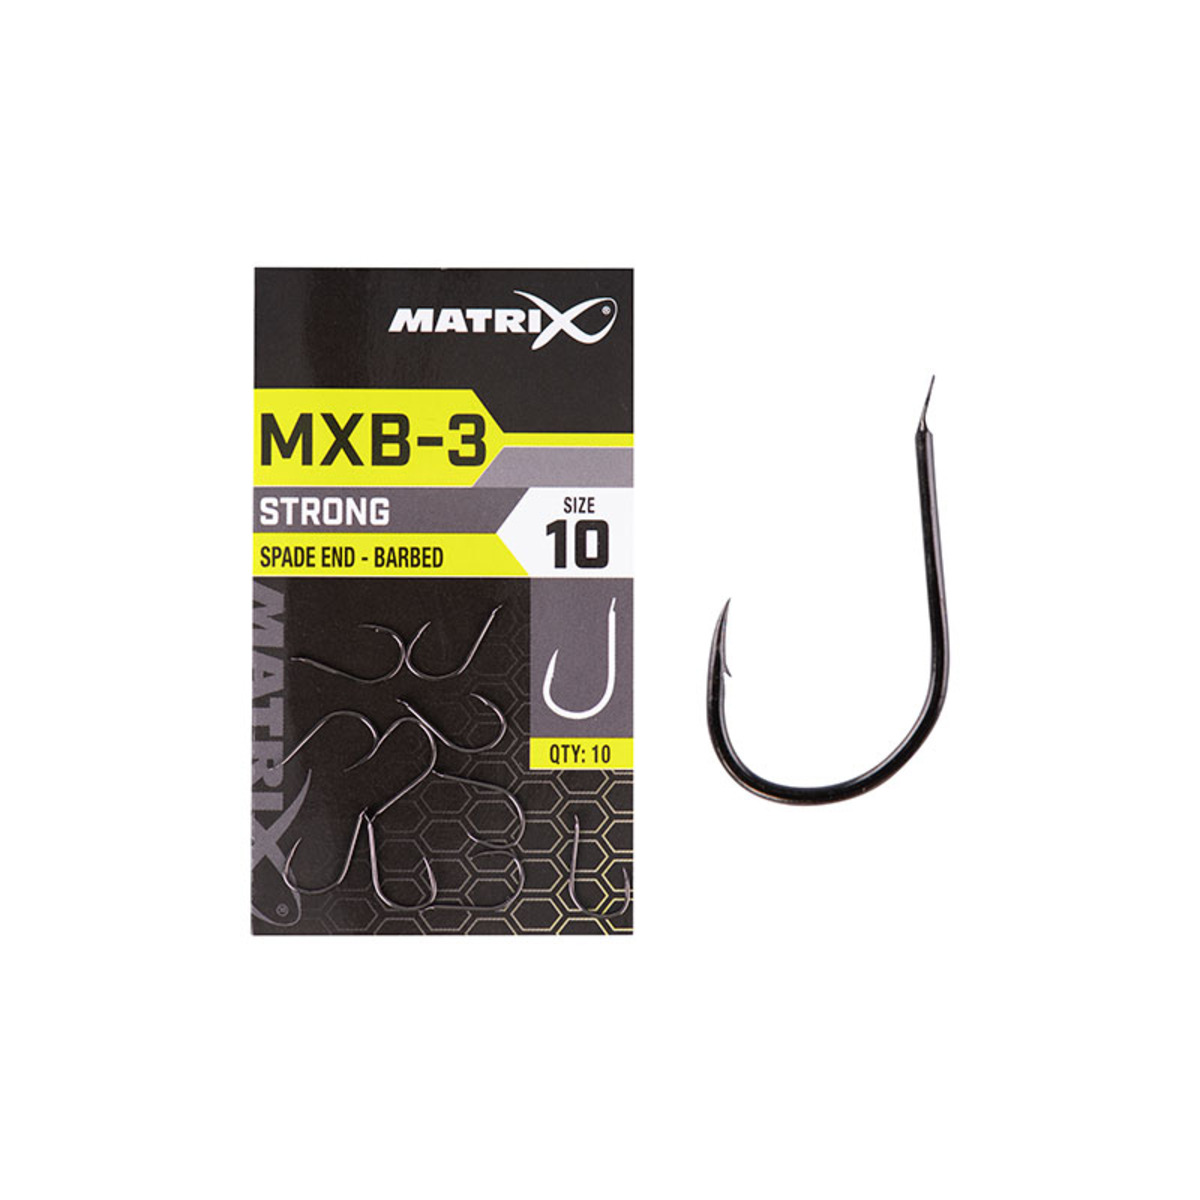 Matrix Mxb-3 - Size 10